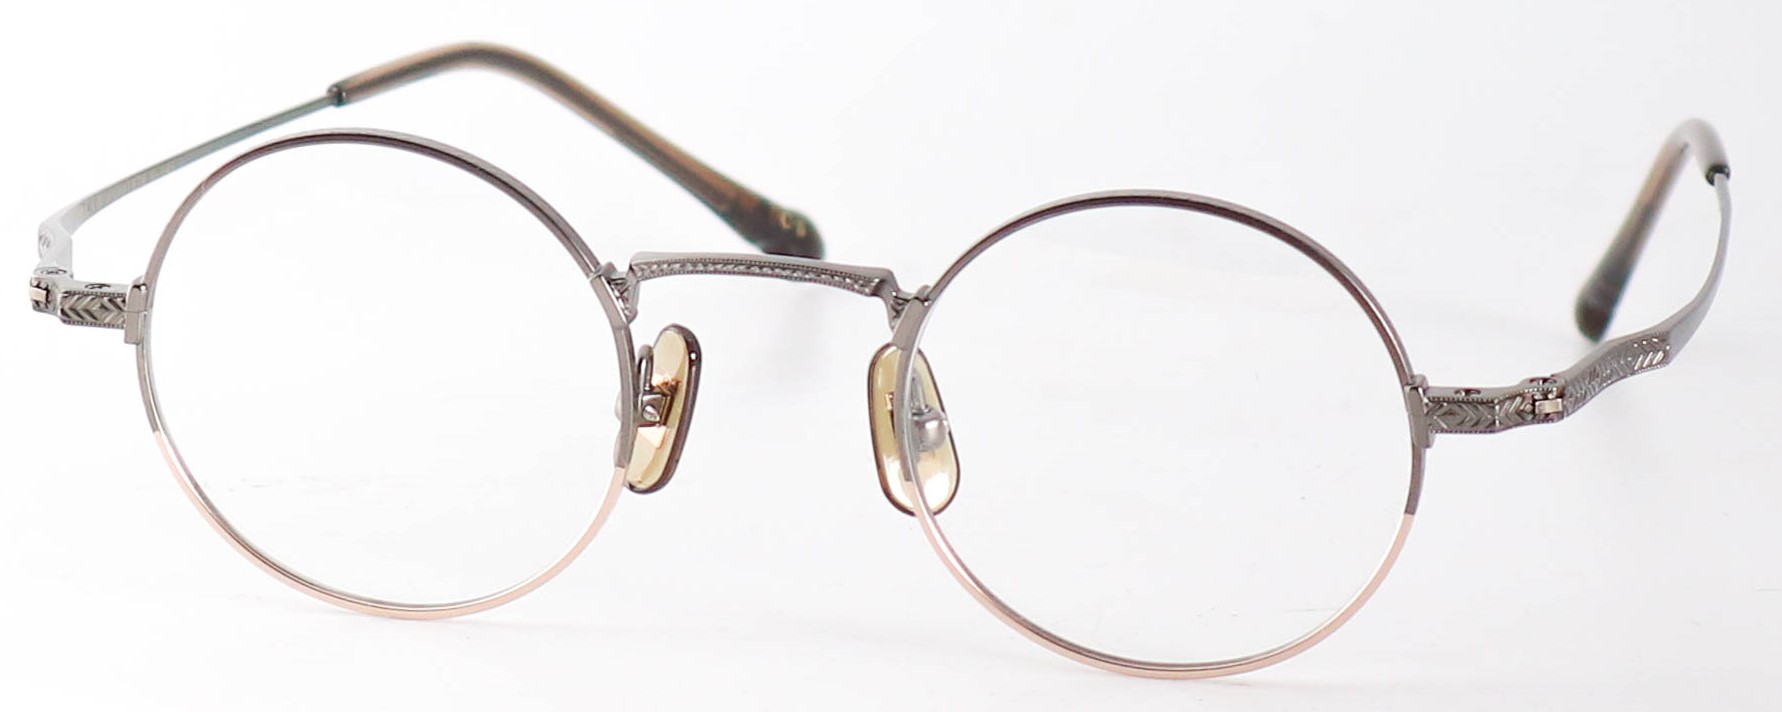 眼鏡のカラータイプC-5 Gray-Matt/Gold-Matt